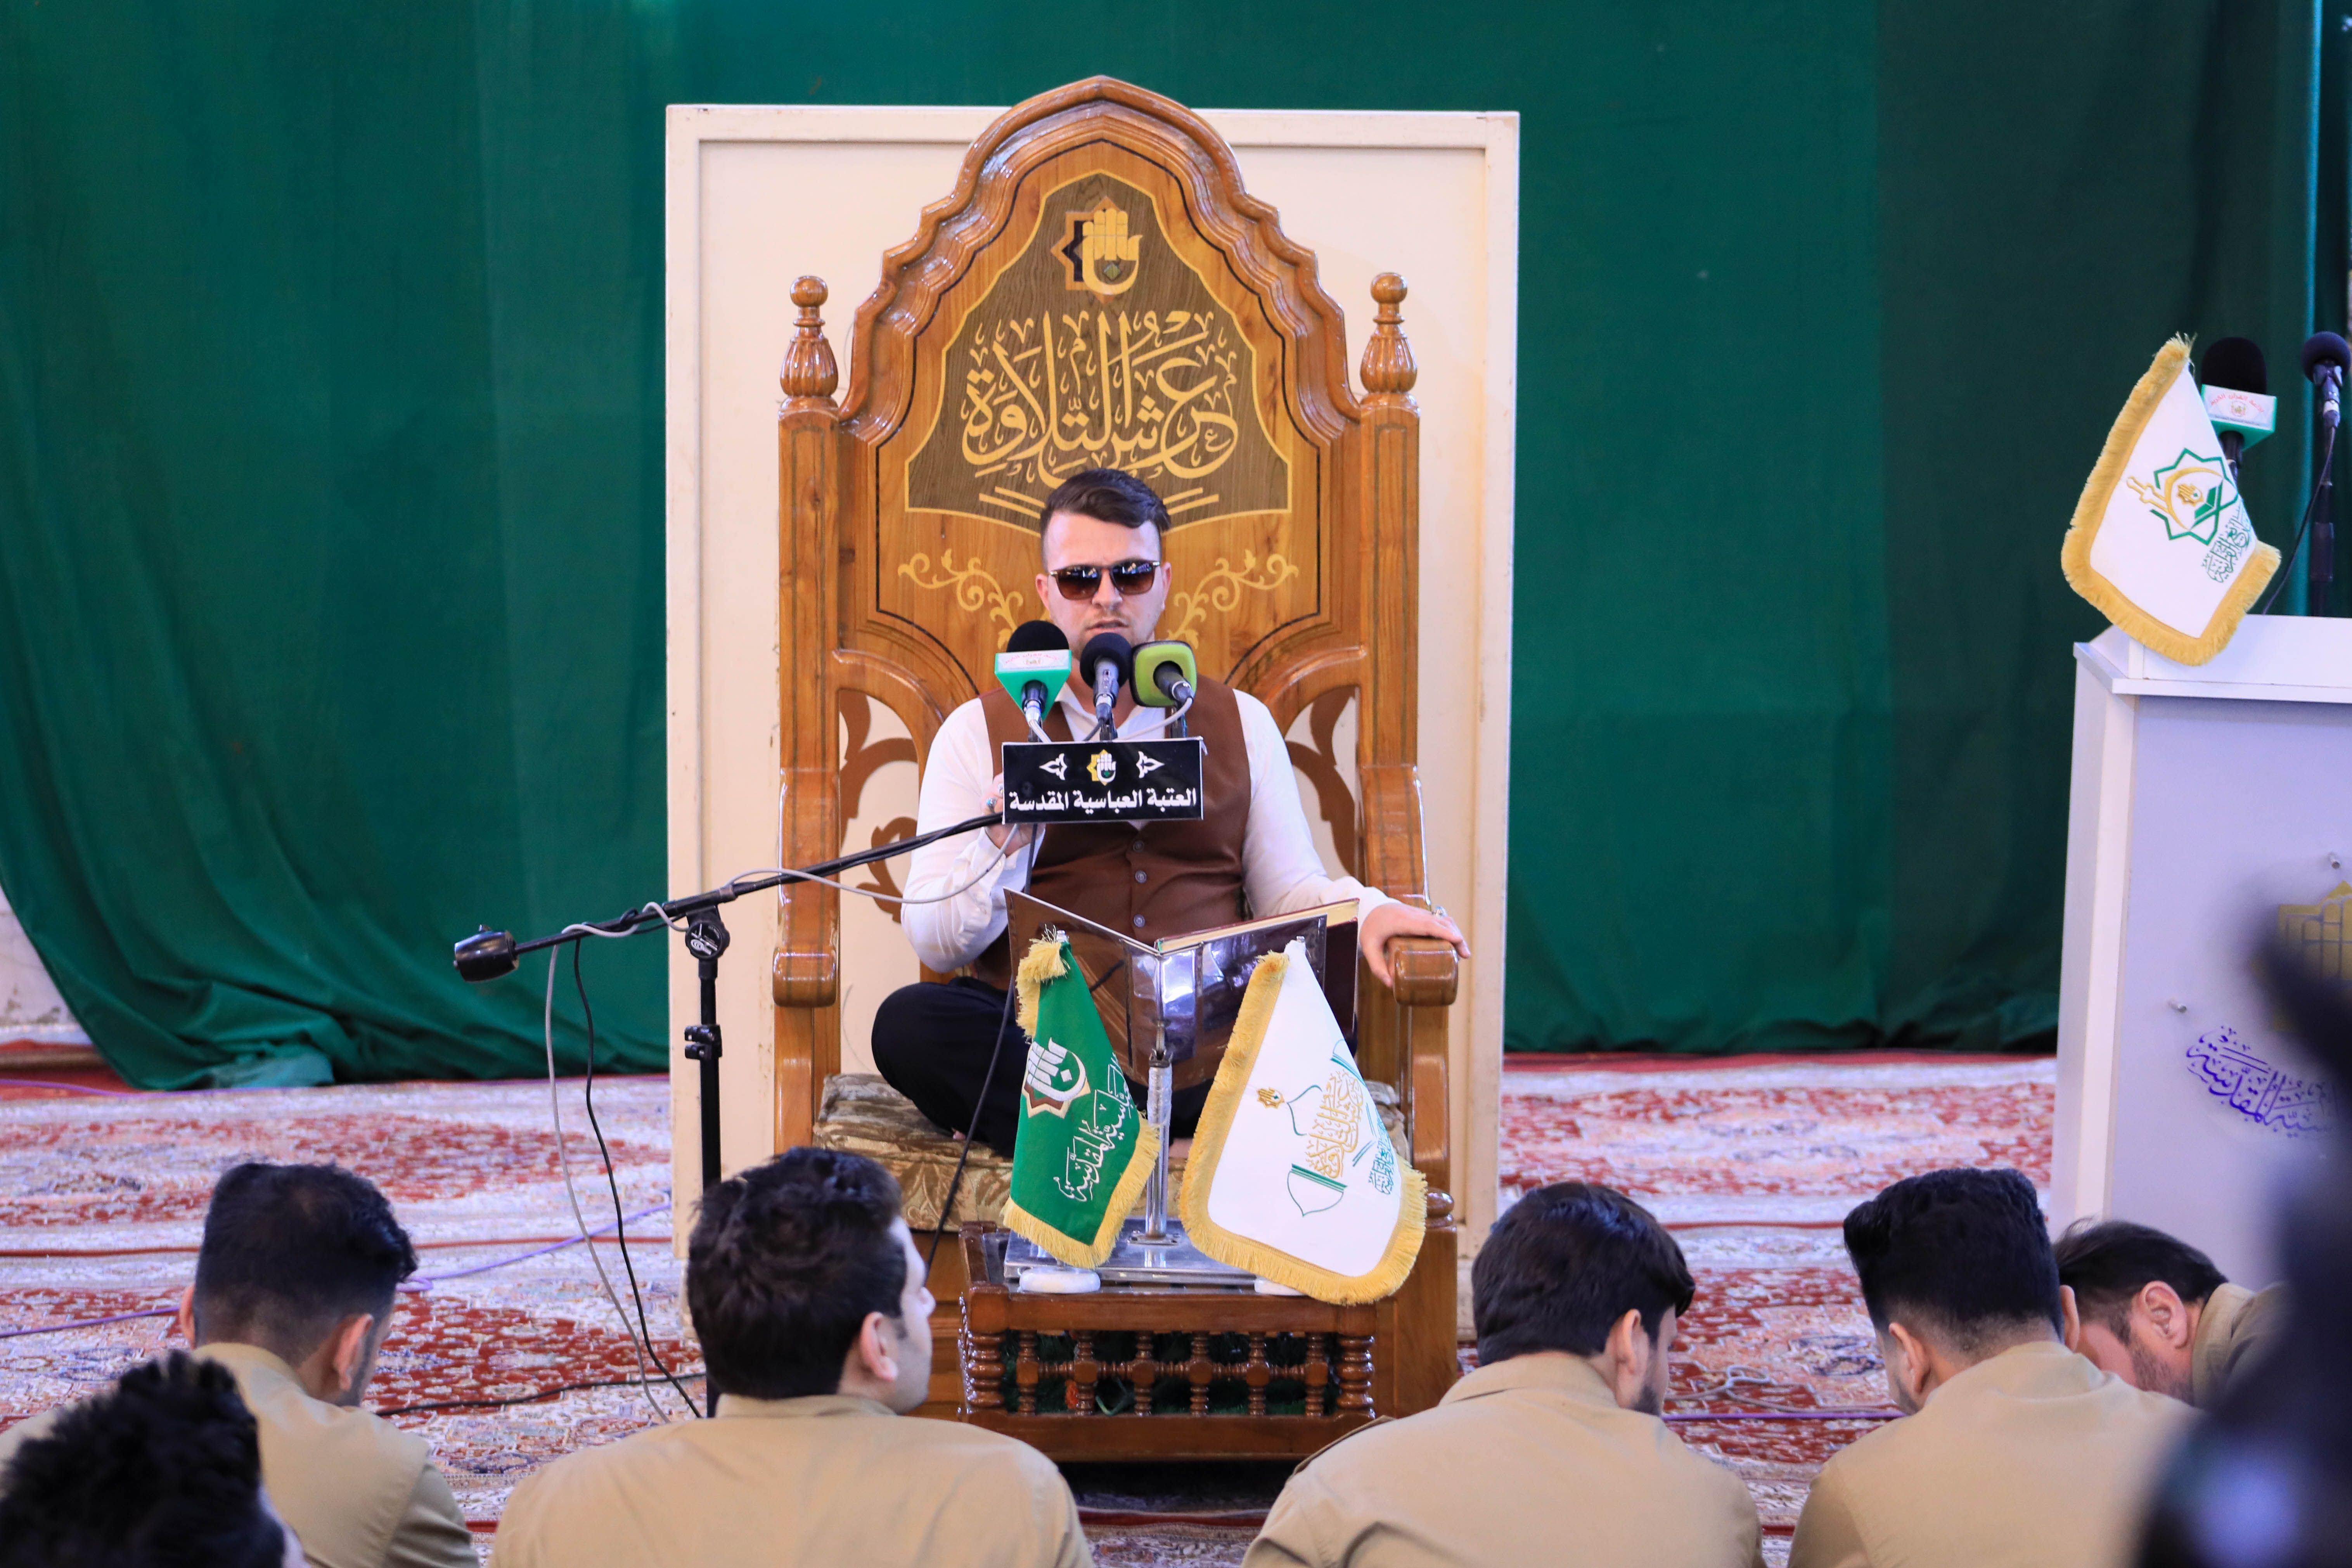 قسم القرآن الكريم في هيئة الحشد الشعبي بضيافة عرش التلاوة